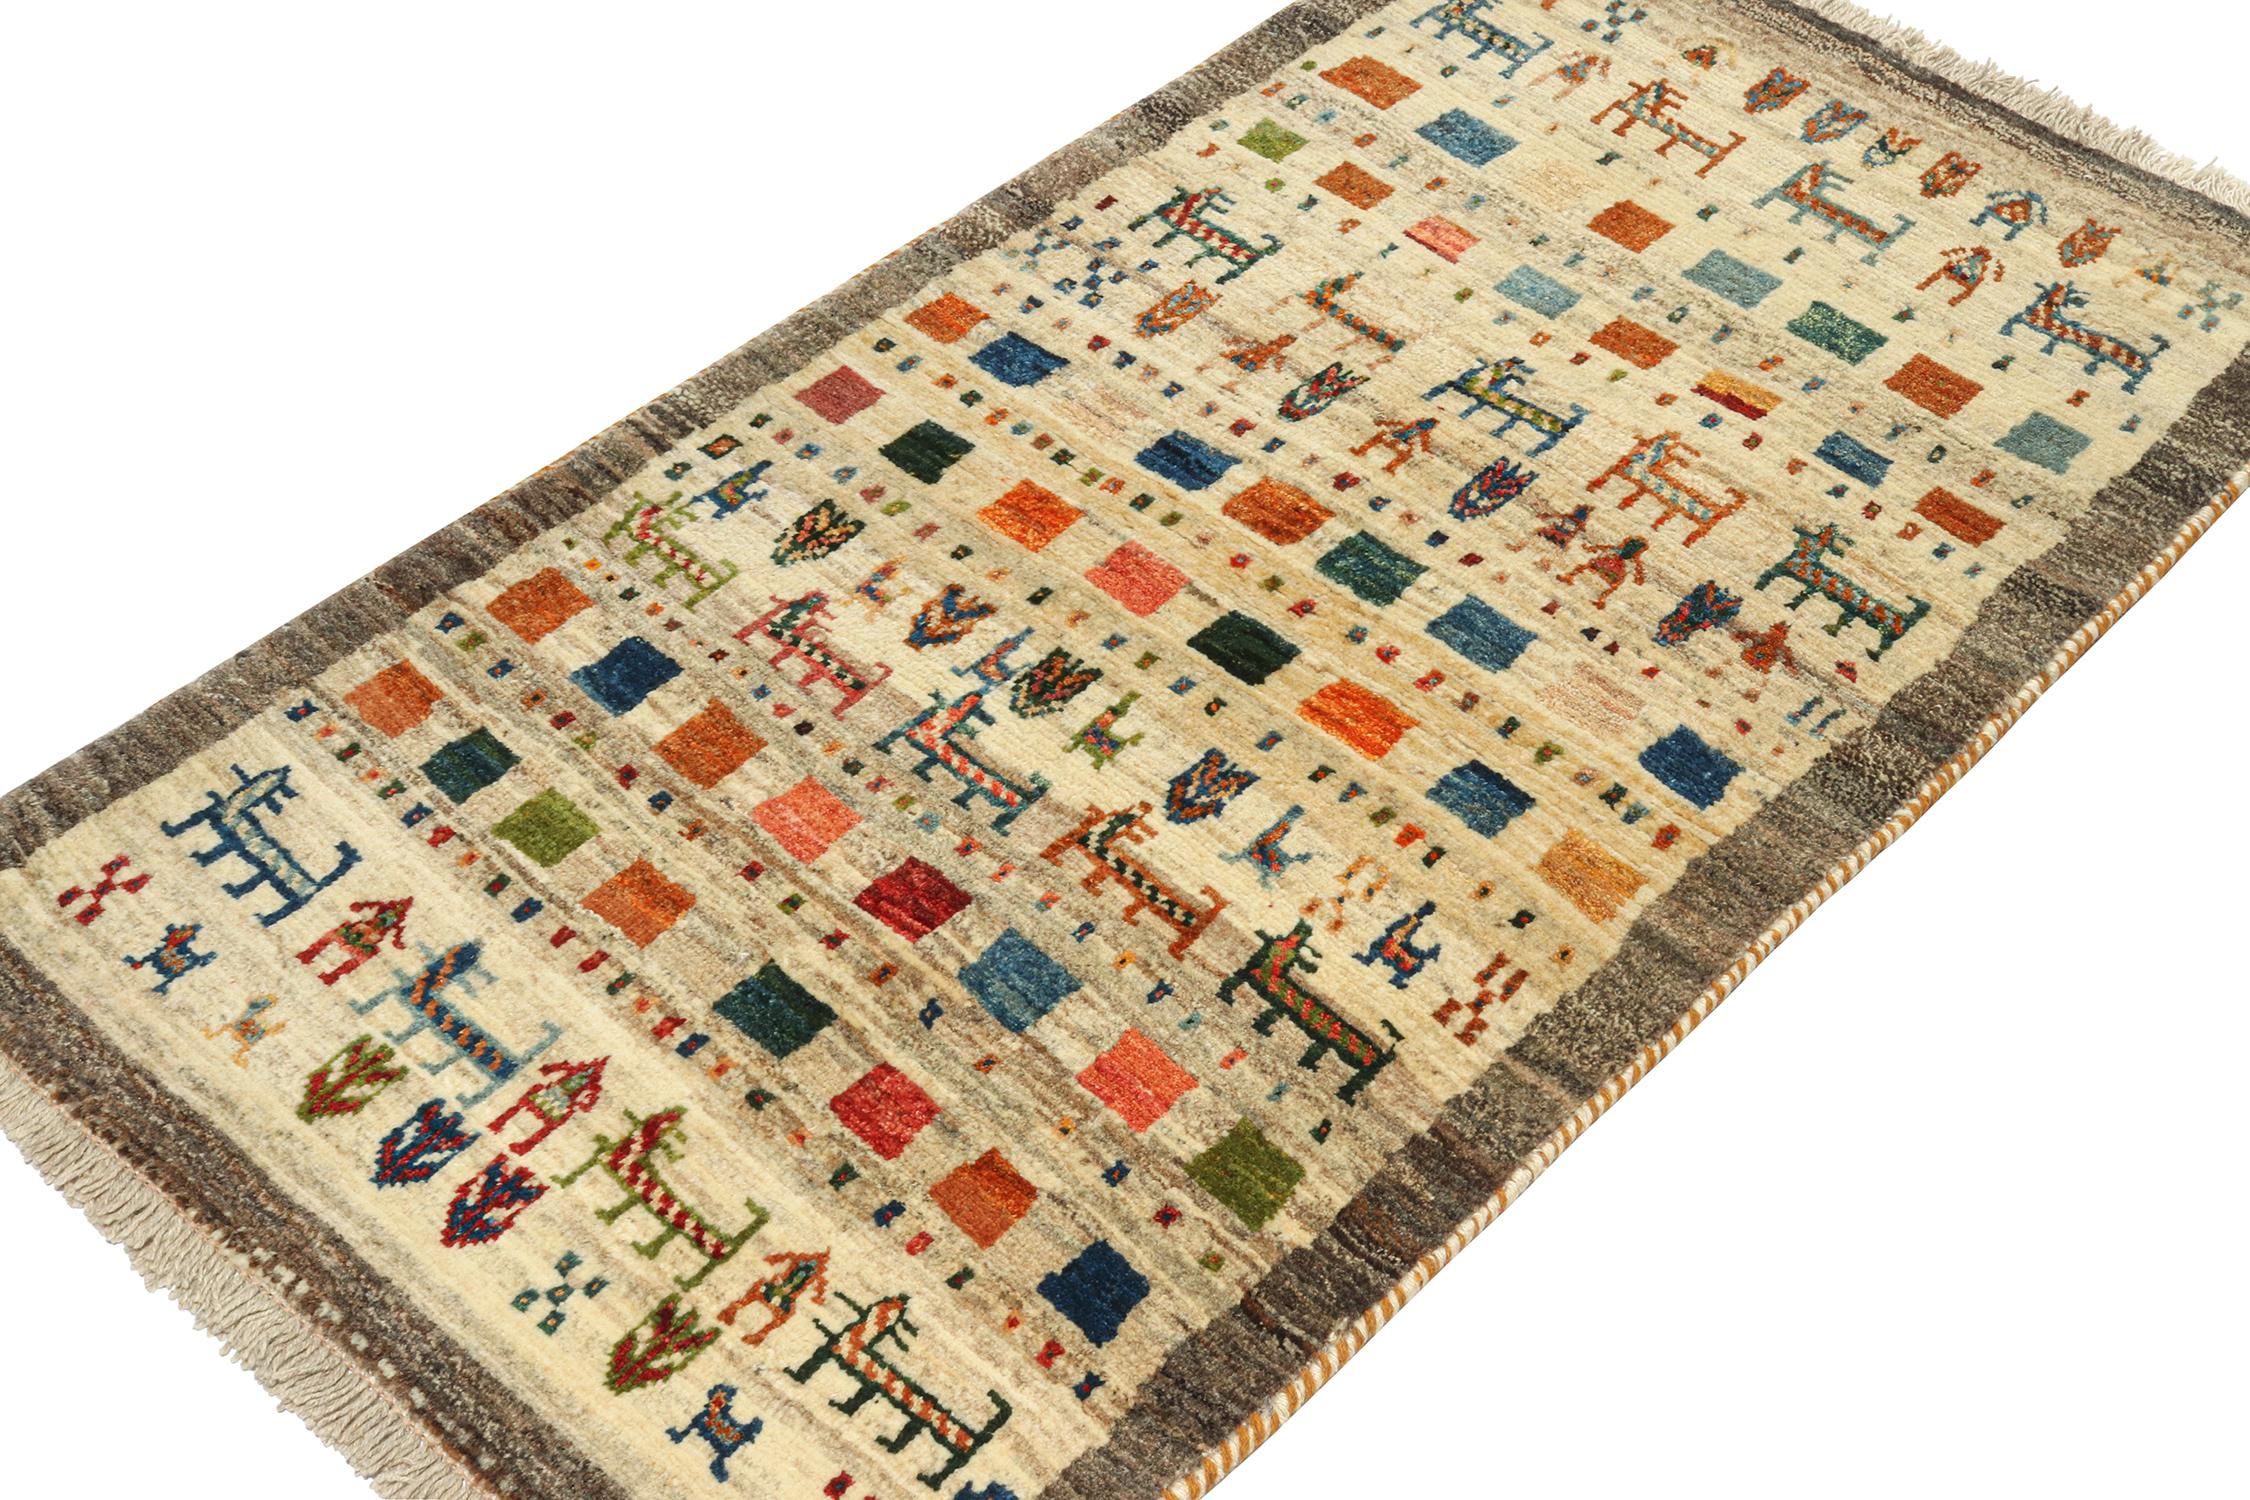 Ein alter persischer Gabbeh-Teppich (3x5) aus der neuesten Kollektion von Rug & Kilim, die seltene Stammesstücke enthält. Handgeknüpft aus Wolle, ca. 1950-1960.
Über das Design:
Kenner werden diesen Stammesursprung als einen der primitivsten,